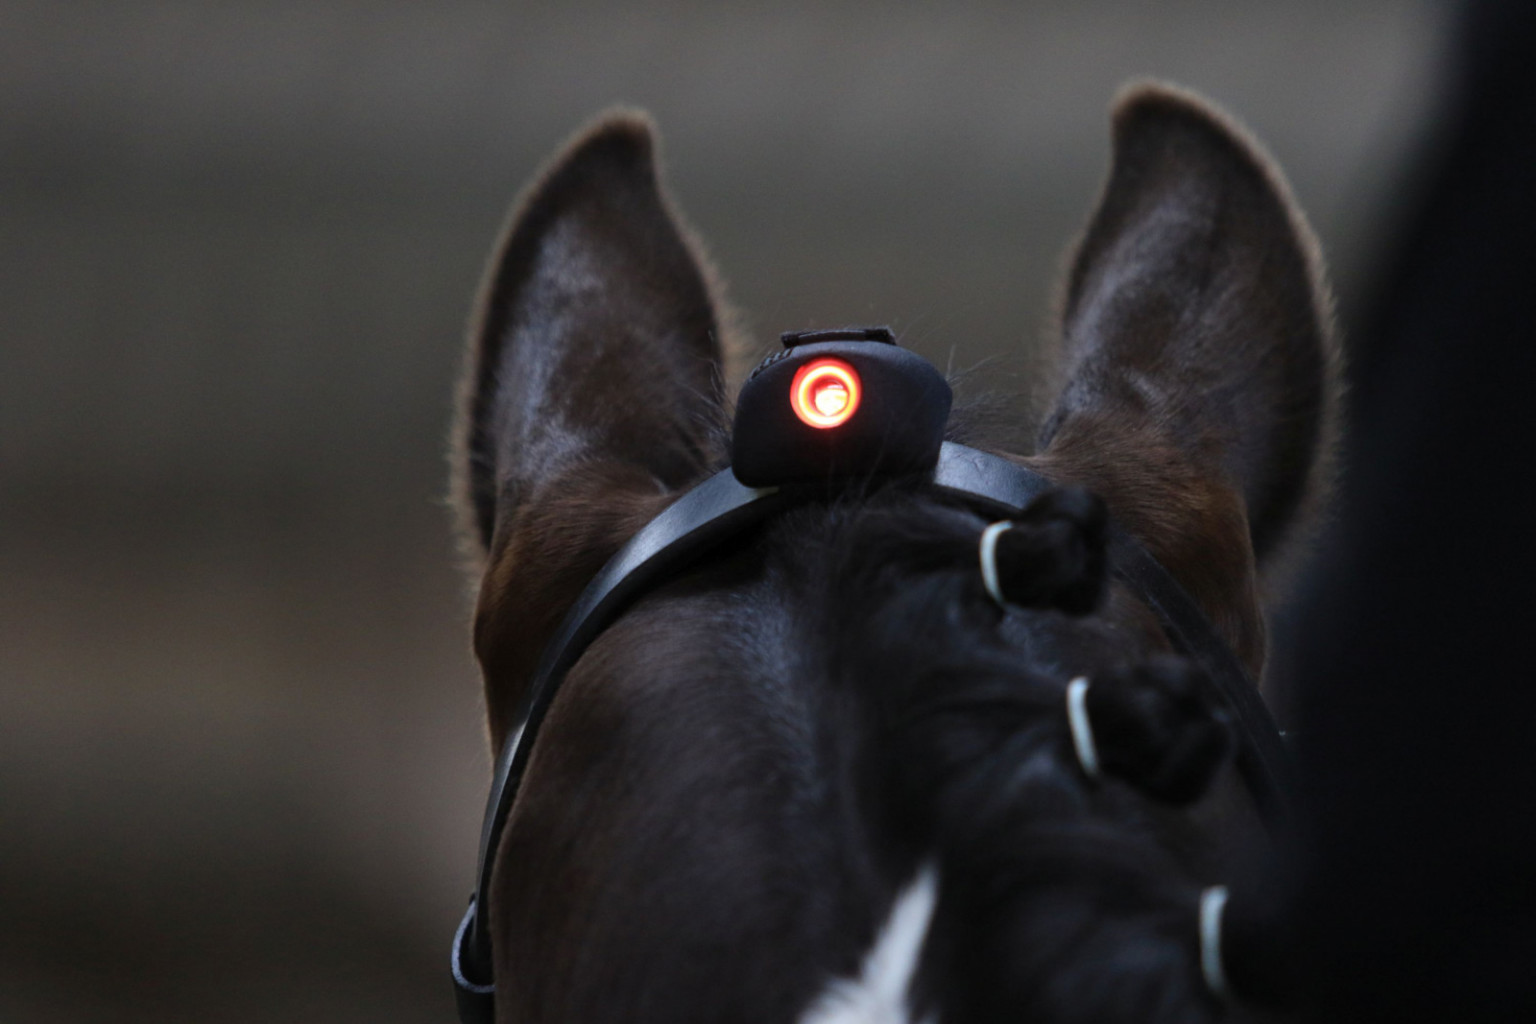 
				Ko zasveti rdeča luč, jahač ve, da je konjeva glava v nepravilnem položaju.			